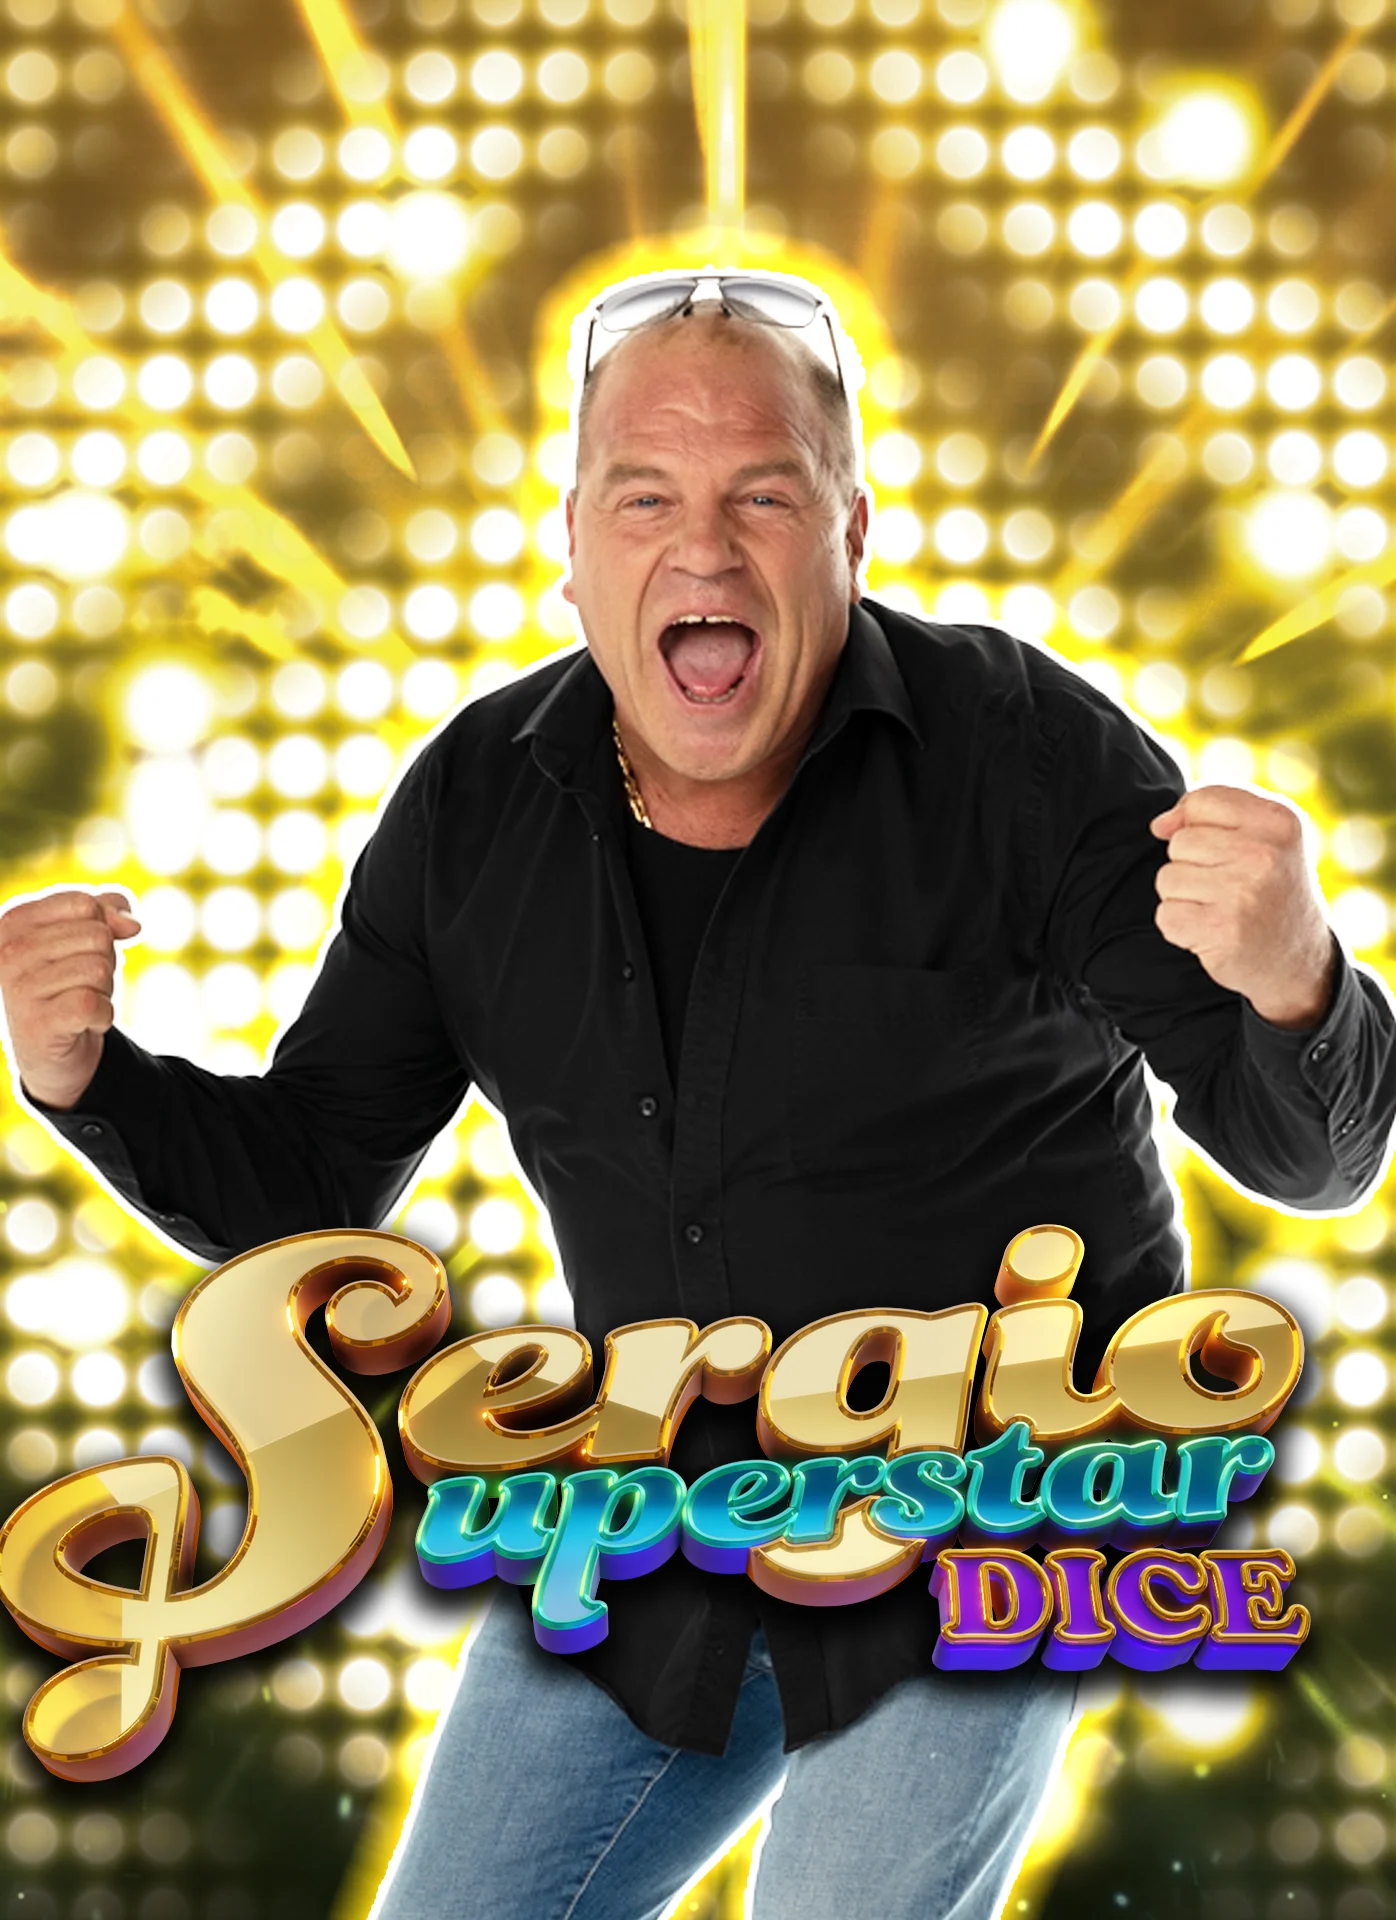 เล่น Sergio Superstar Dice บนคาสิโนออนไลน์ Starcasinodice.be